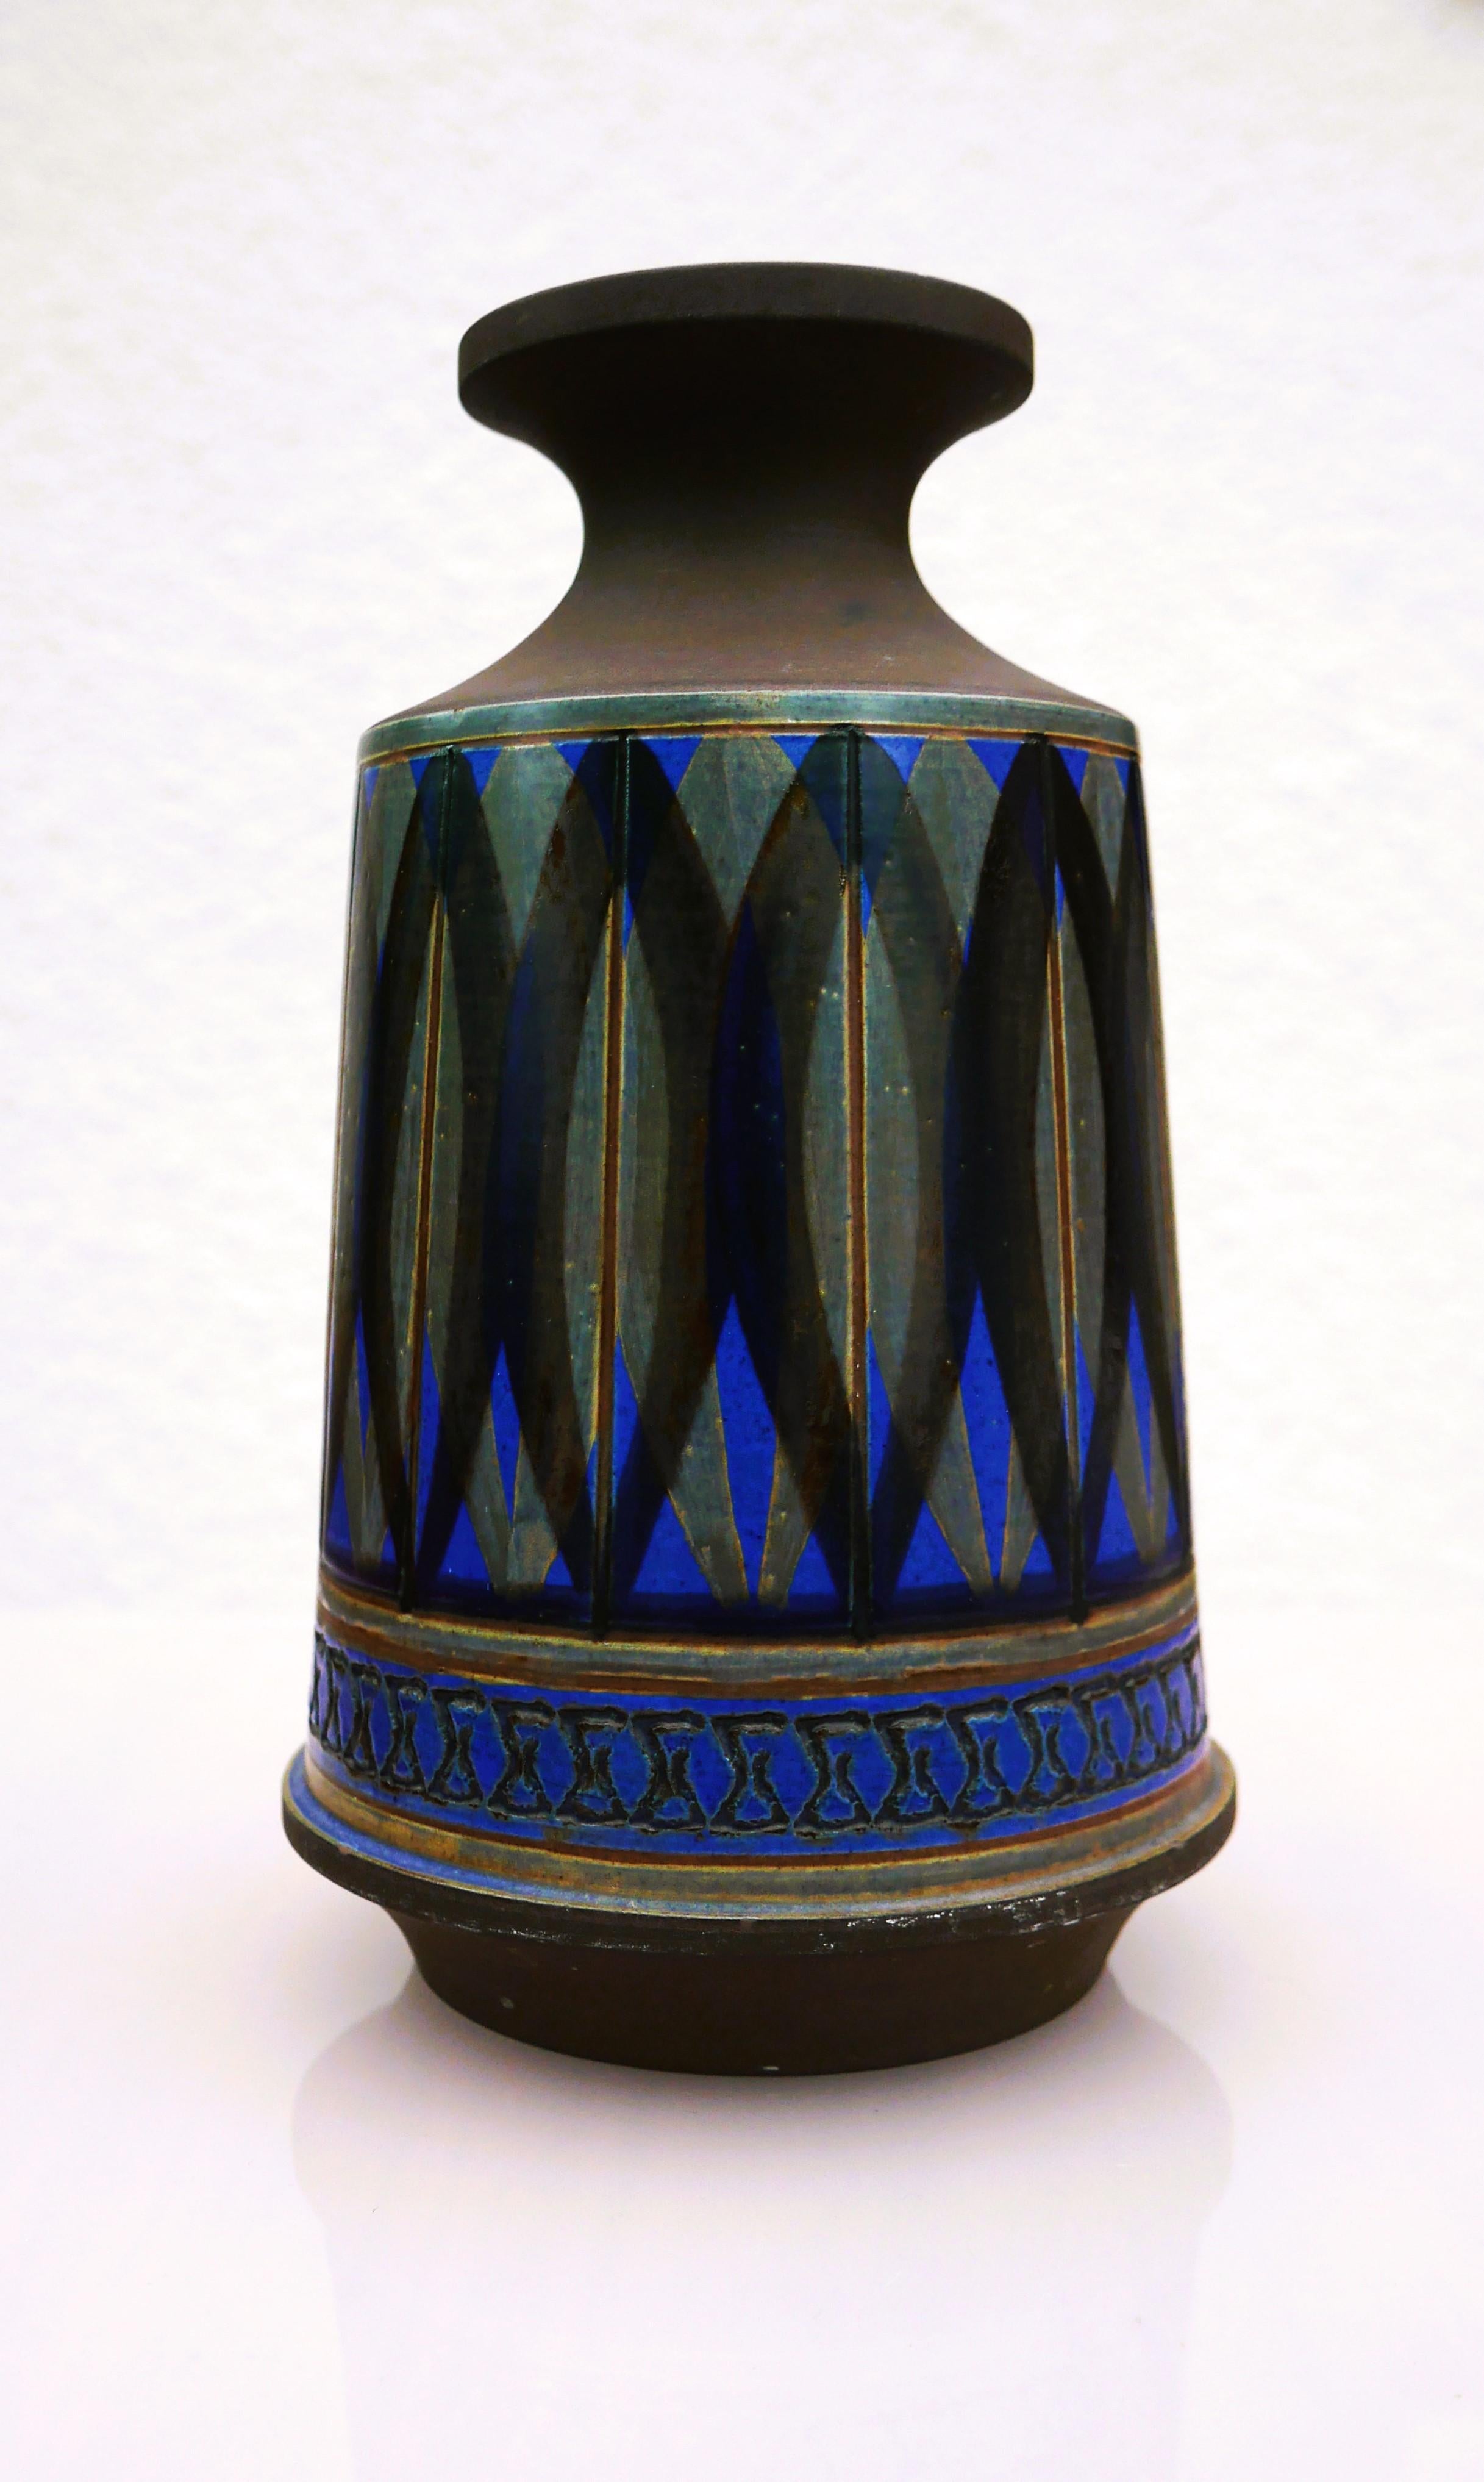 Dies ist eine atemberaubende  Vase aus Steinzeug von Alingsås keramik, Schweden. Es ist von Ullah Winbladh handgefertigt und von ihr signiert. Das Muster und die Glasur sind einfach erstaunlich und so typisch für ihre Arbeit. Die Farben sind